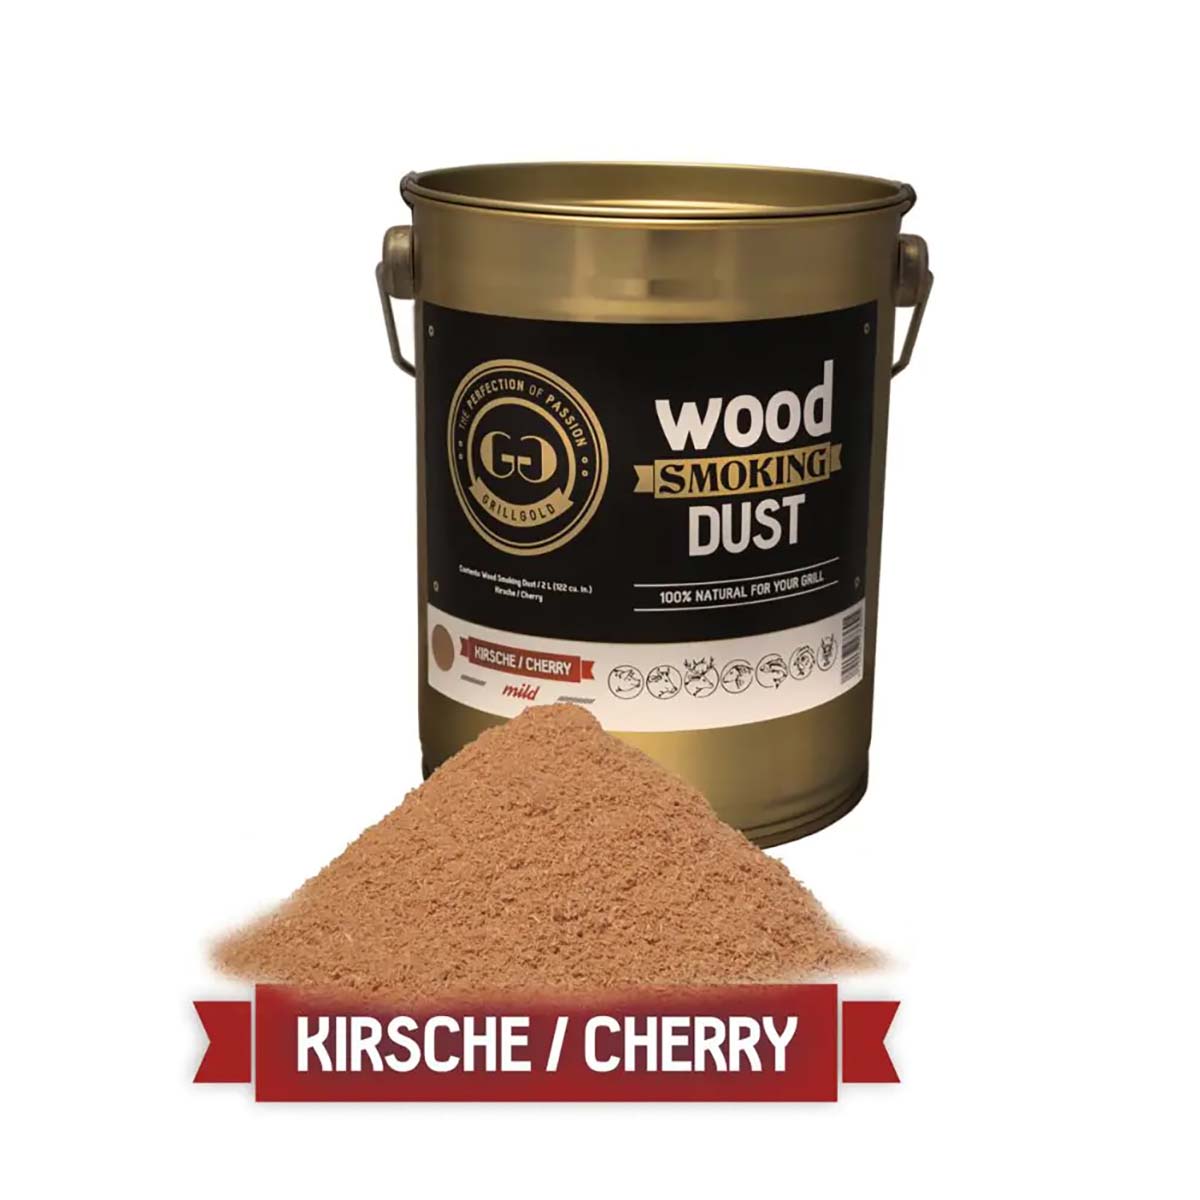 Grillgold Wood Smoking Dust / Kirsche / 2 Liter  (122 cu. in.